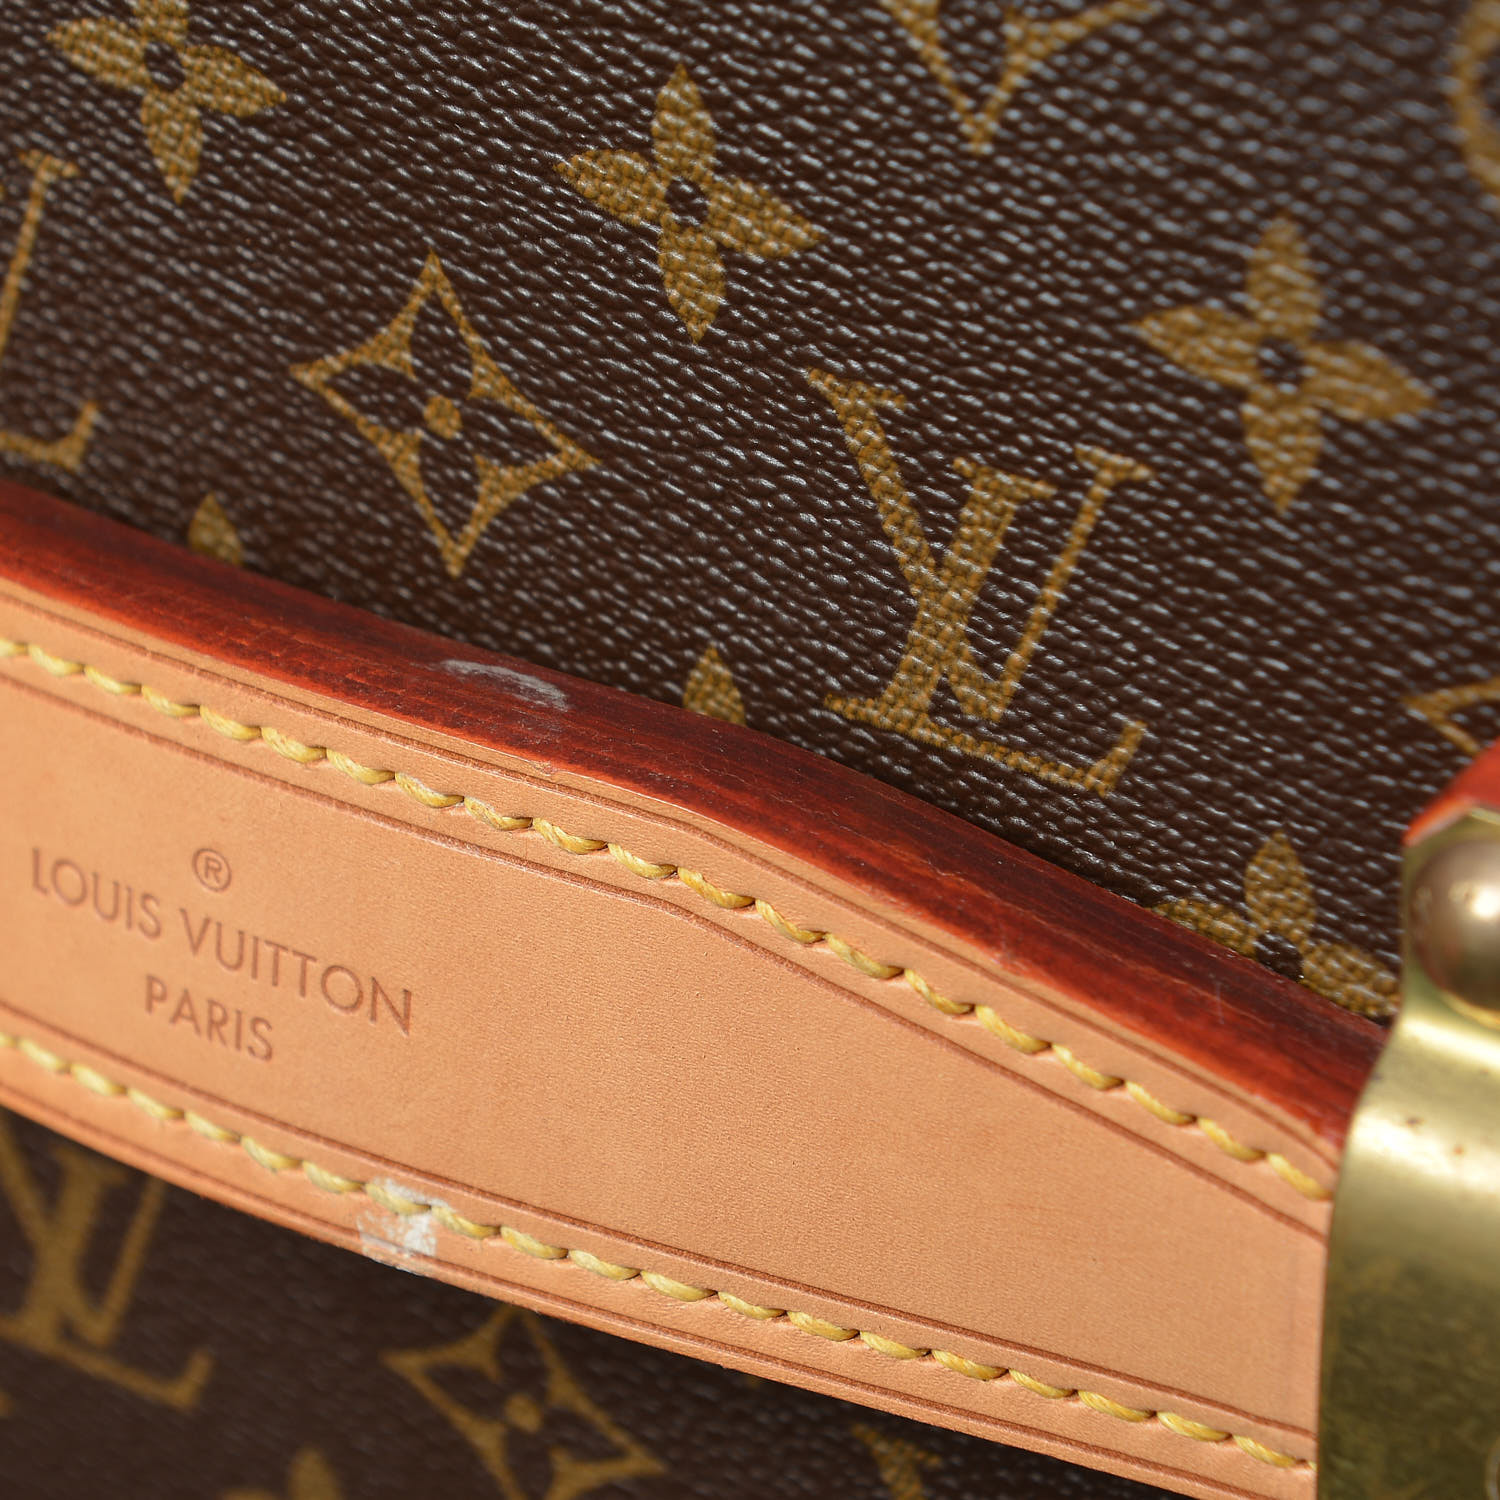 LOUIS Vuitton Side Trunk, Unboxing